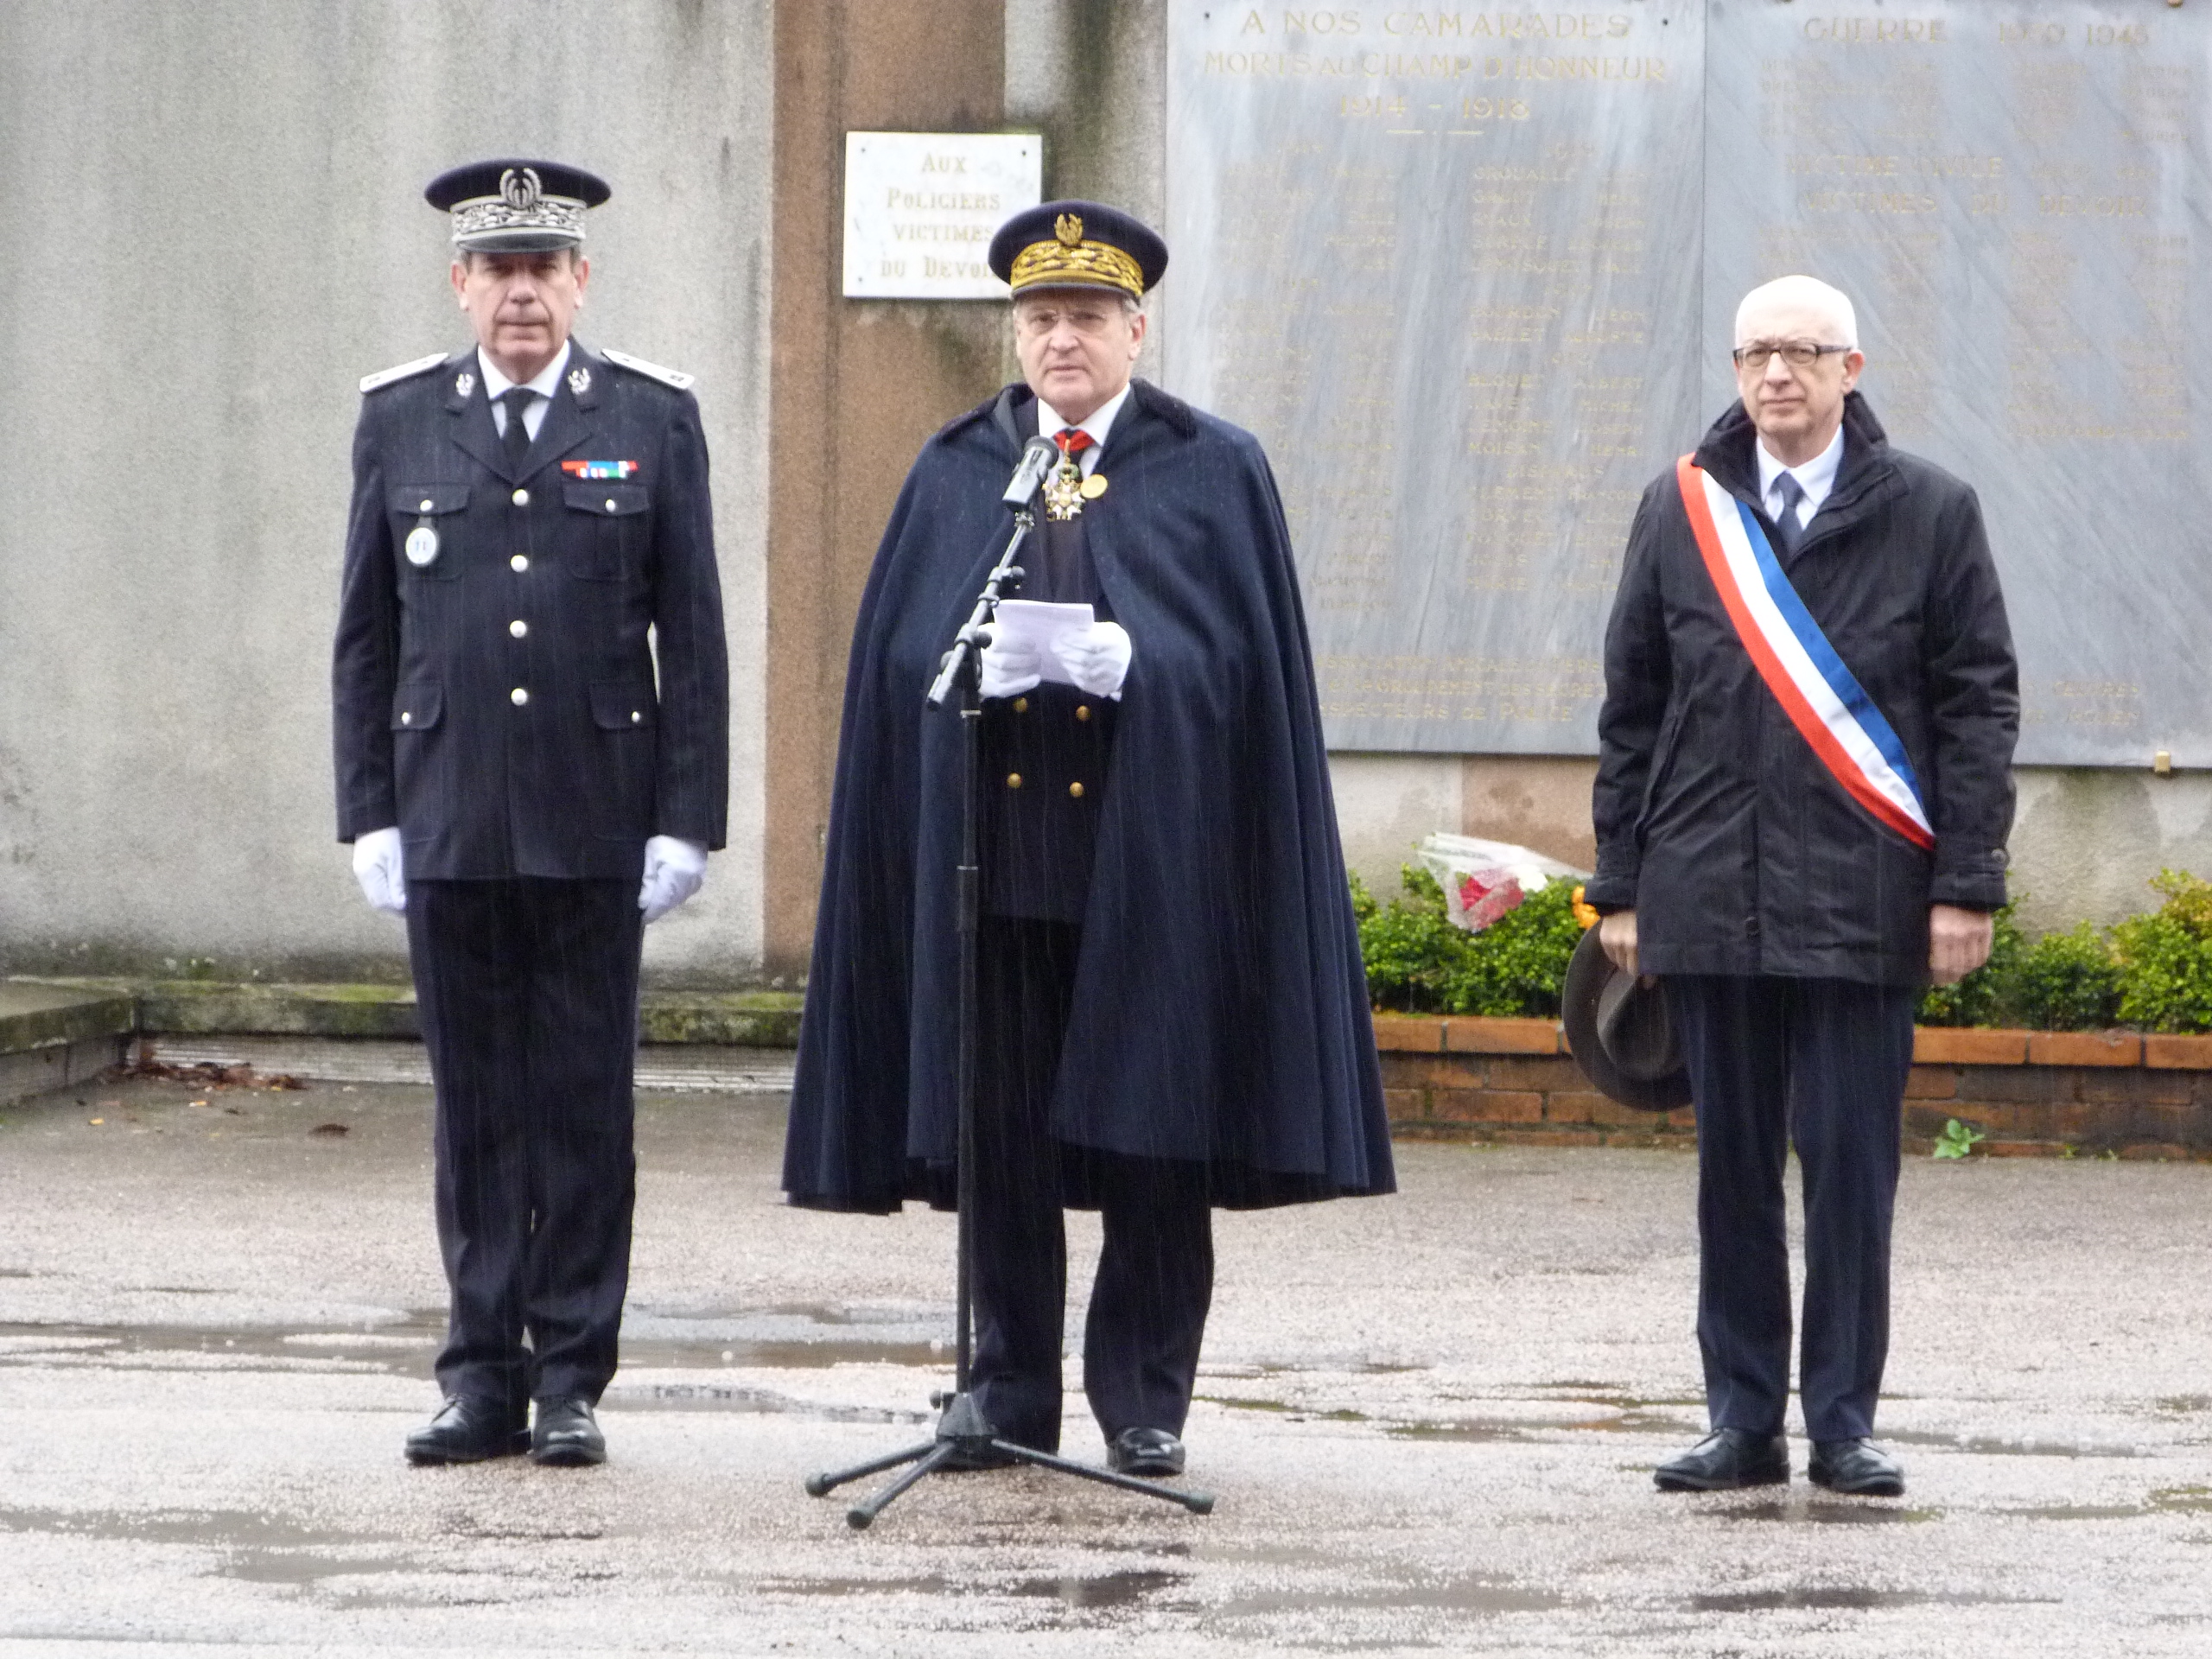 Le préfet Pierre-Henry Maccioni entouré d'Yvon Robert, maire de Rouen et du contrôleur Philippe Trénec, DDSP de Seine-Maritime (Photo DR)